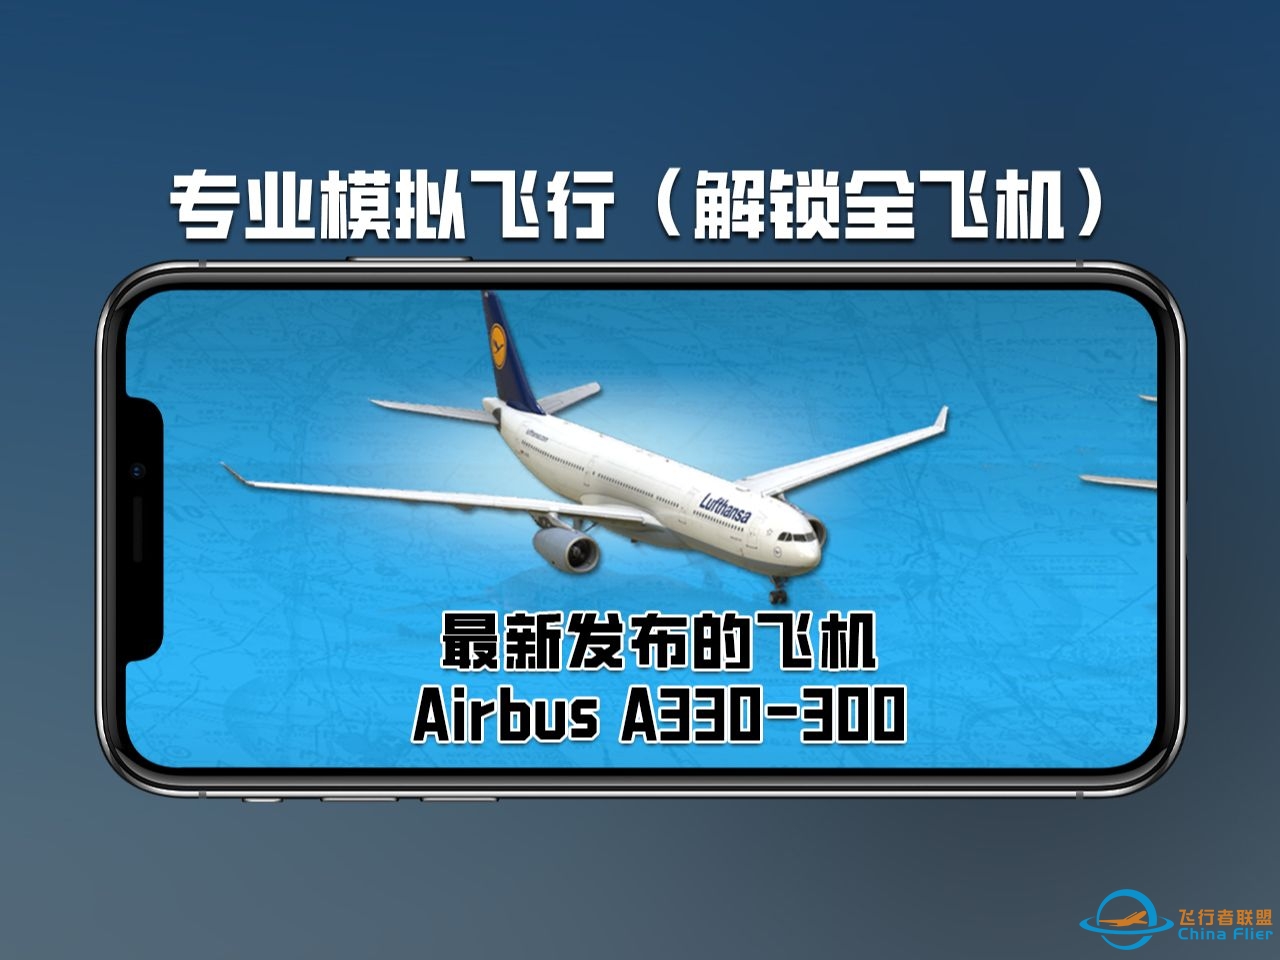 X-plane二月最新王炸飞机！Airbus A330-300正式上线-5328 